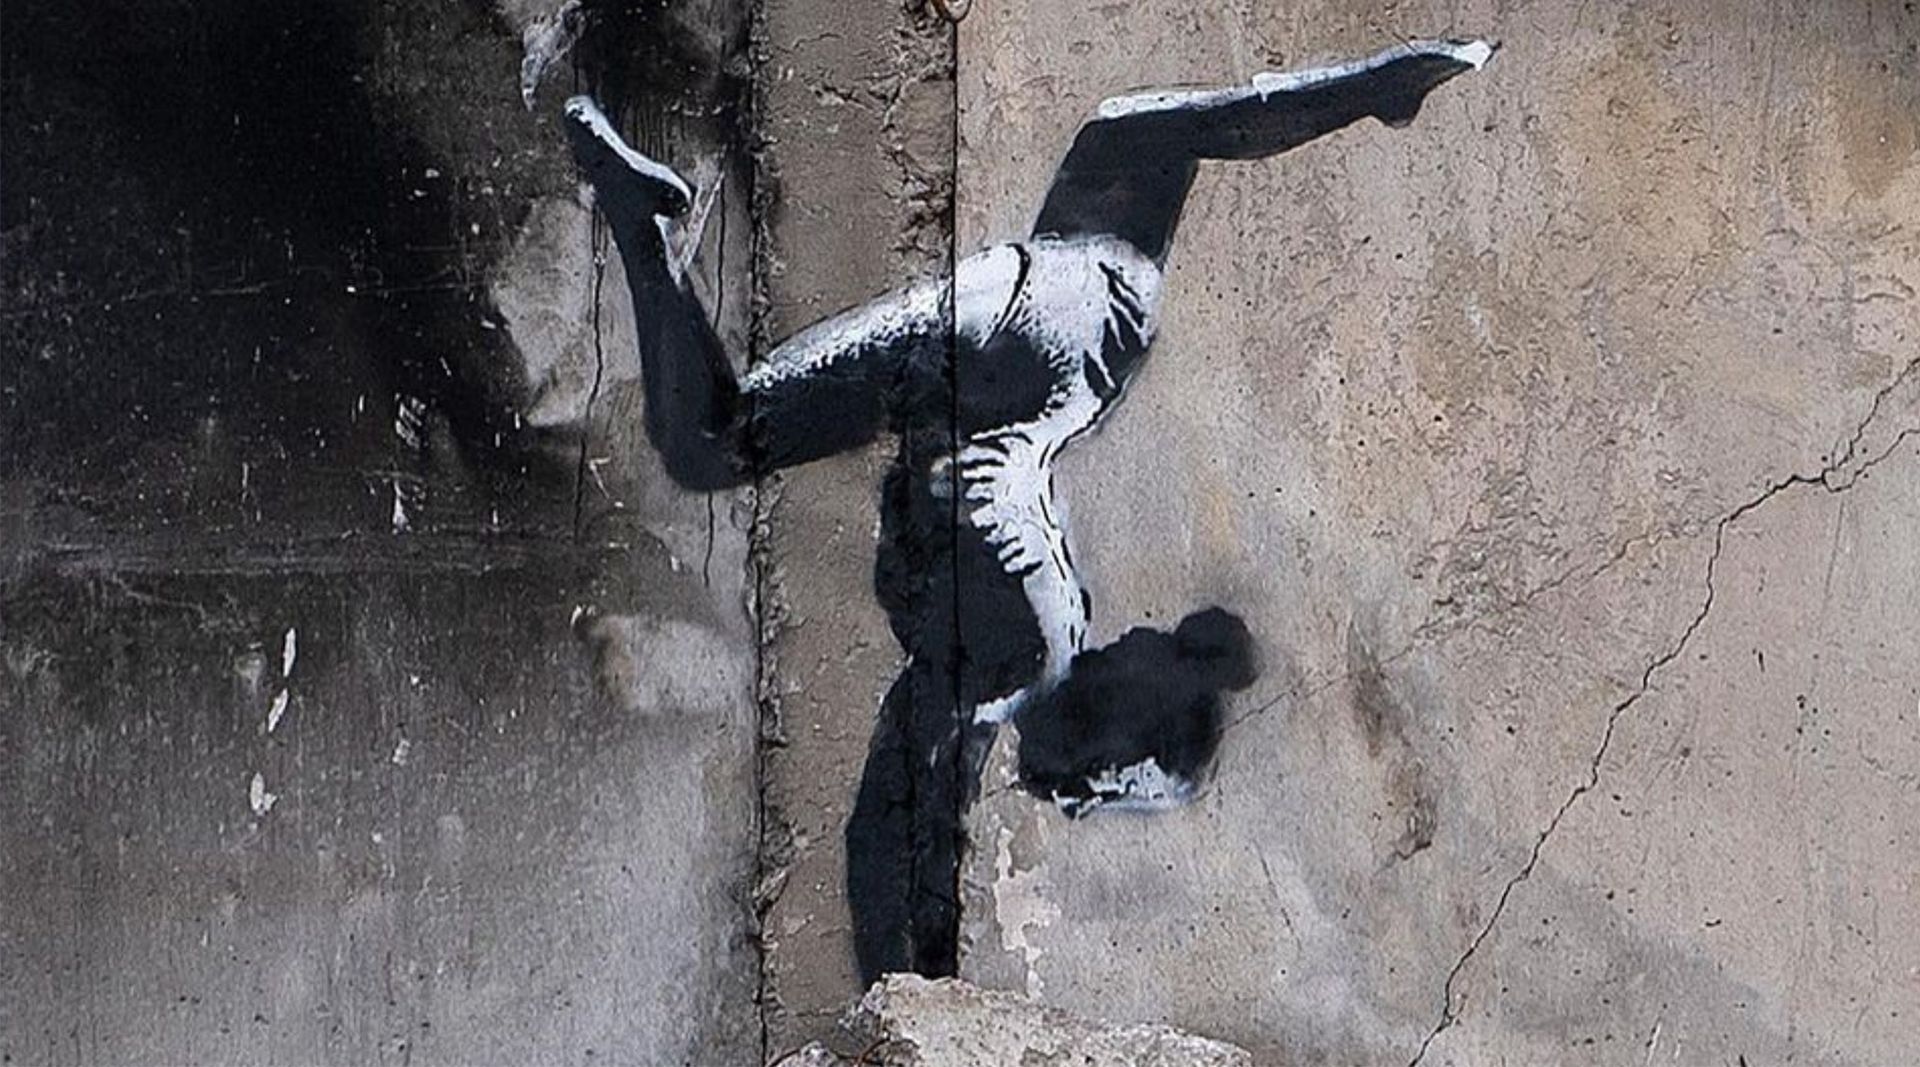 Detail of the Banksy mural in Borodyanka Via Instagram